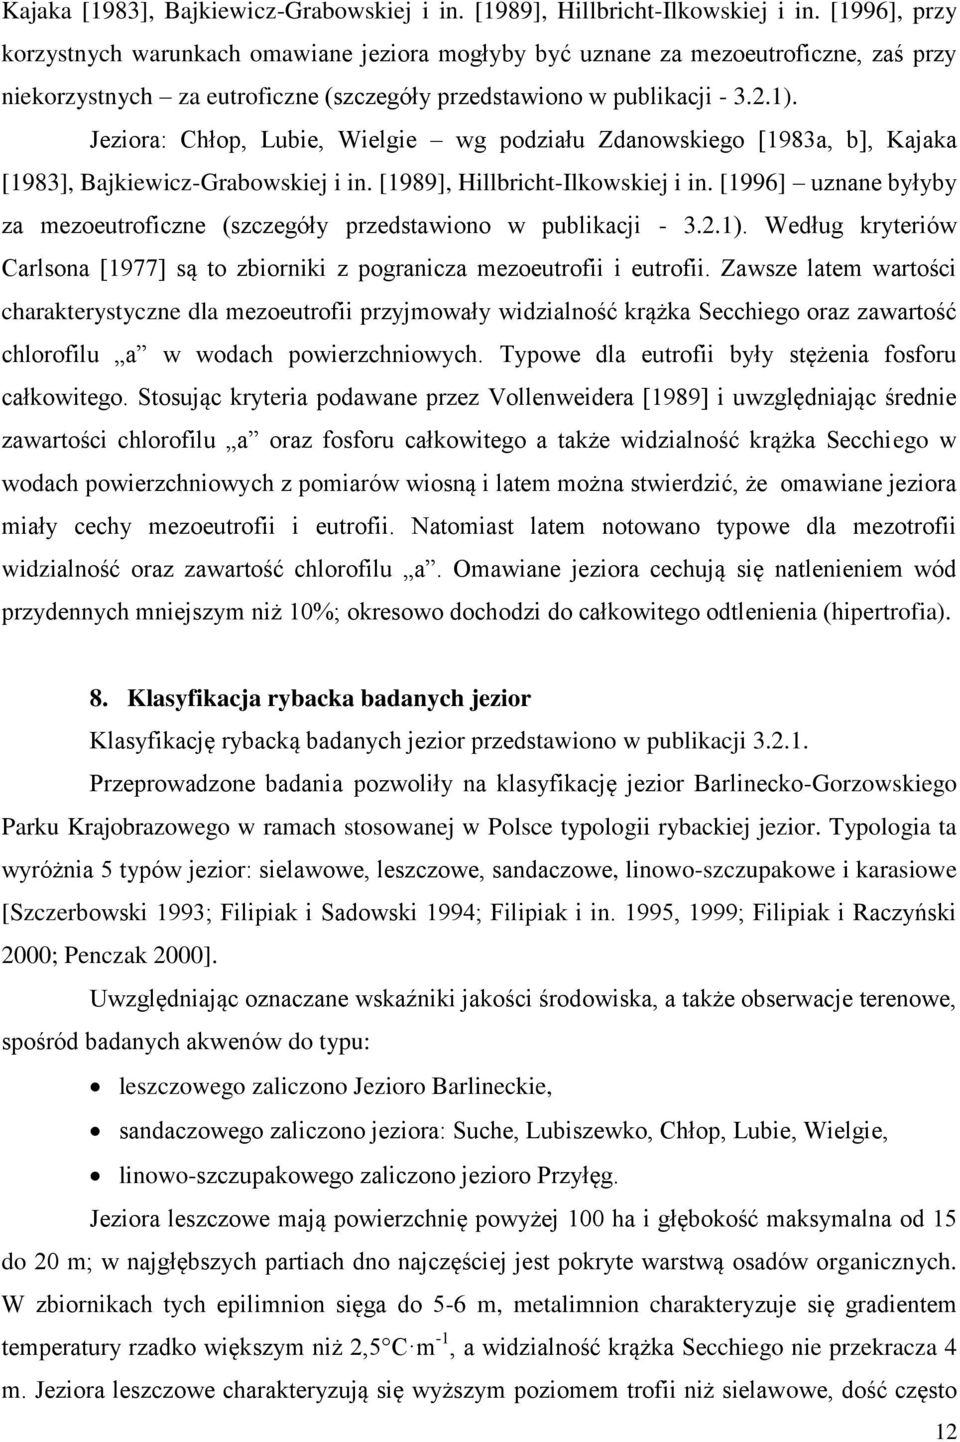 Jeziora: Chłop, Lubie, Wielgie wg podziału Zdanowskiego [1983a, b],  [1996] uznane byłyby za mezoeutroficzne (szczegóły przedstawiono w publikacji - 3.2.1).